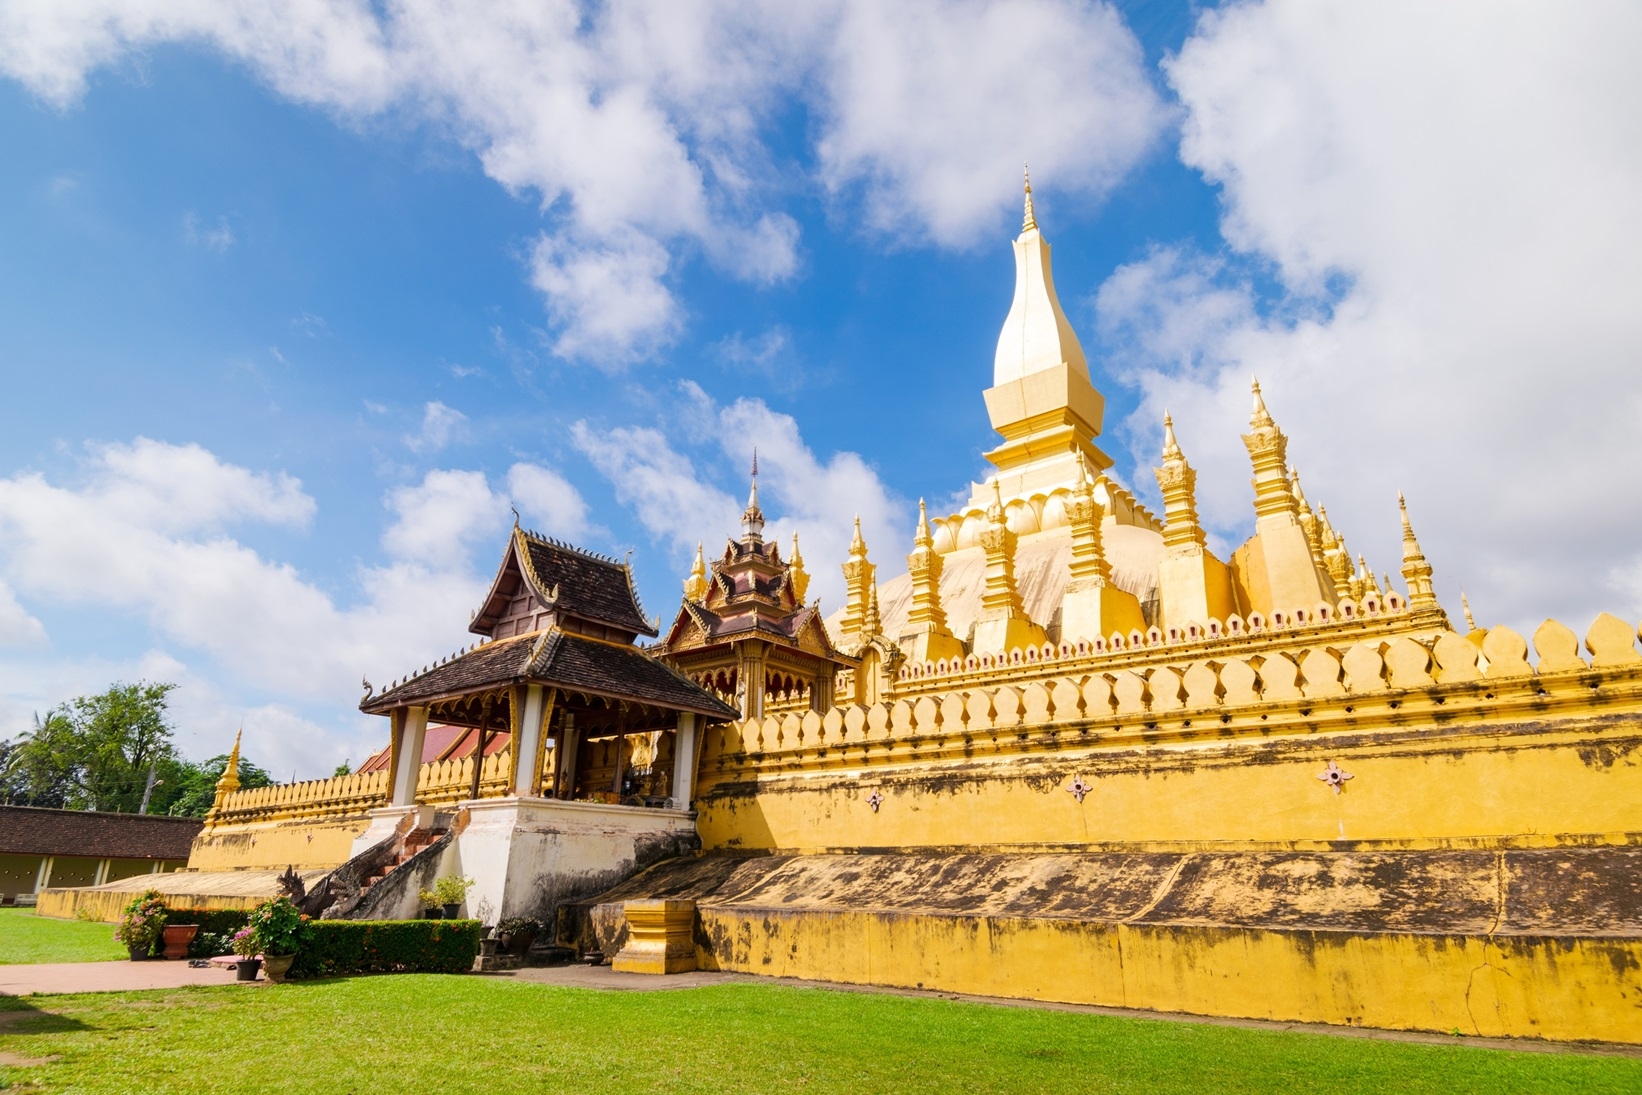 Thủ đô nước Lào thu hút du khách với các di tích kiến trúc nổi tiếng, các ngôi chùa, đền, tháp, nhiều lễ hội địa phương và ẩm thực độc đáo.